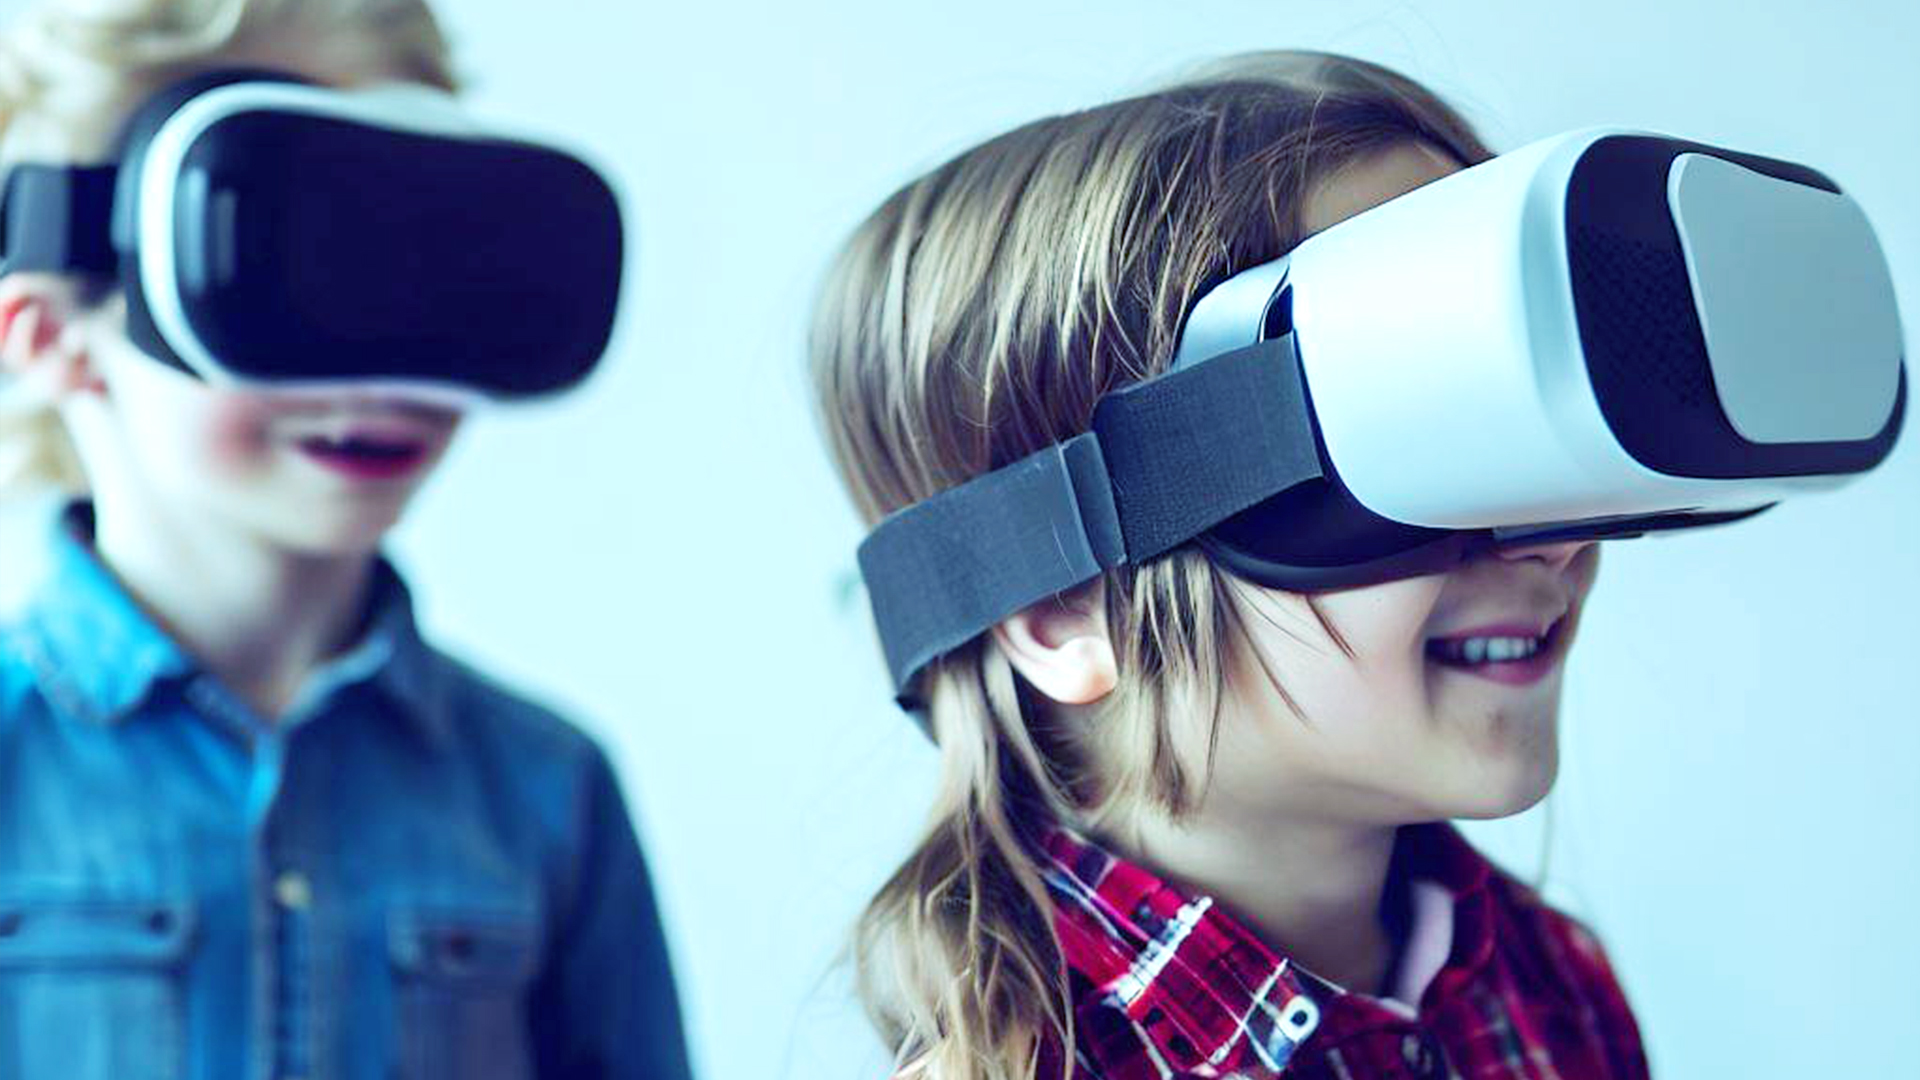  Les casques de réalité virtuelle sont-ils sans danger pour les enfants et les adolescents ? Voici ce que disent les experts